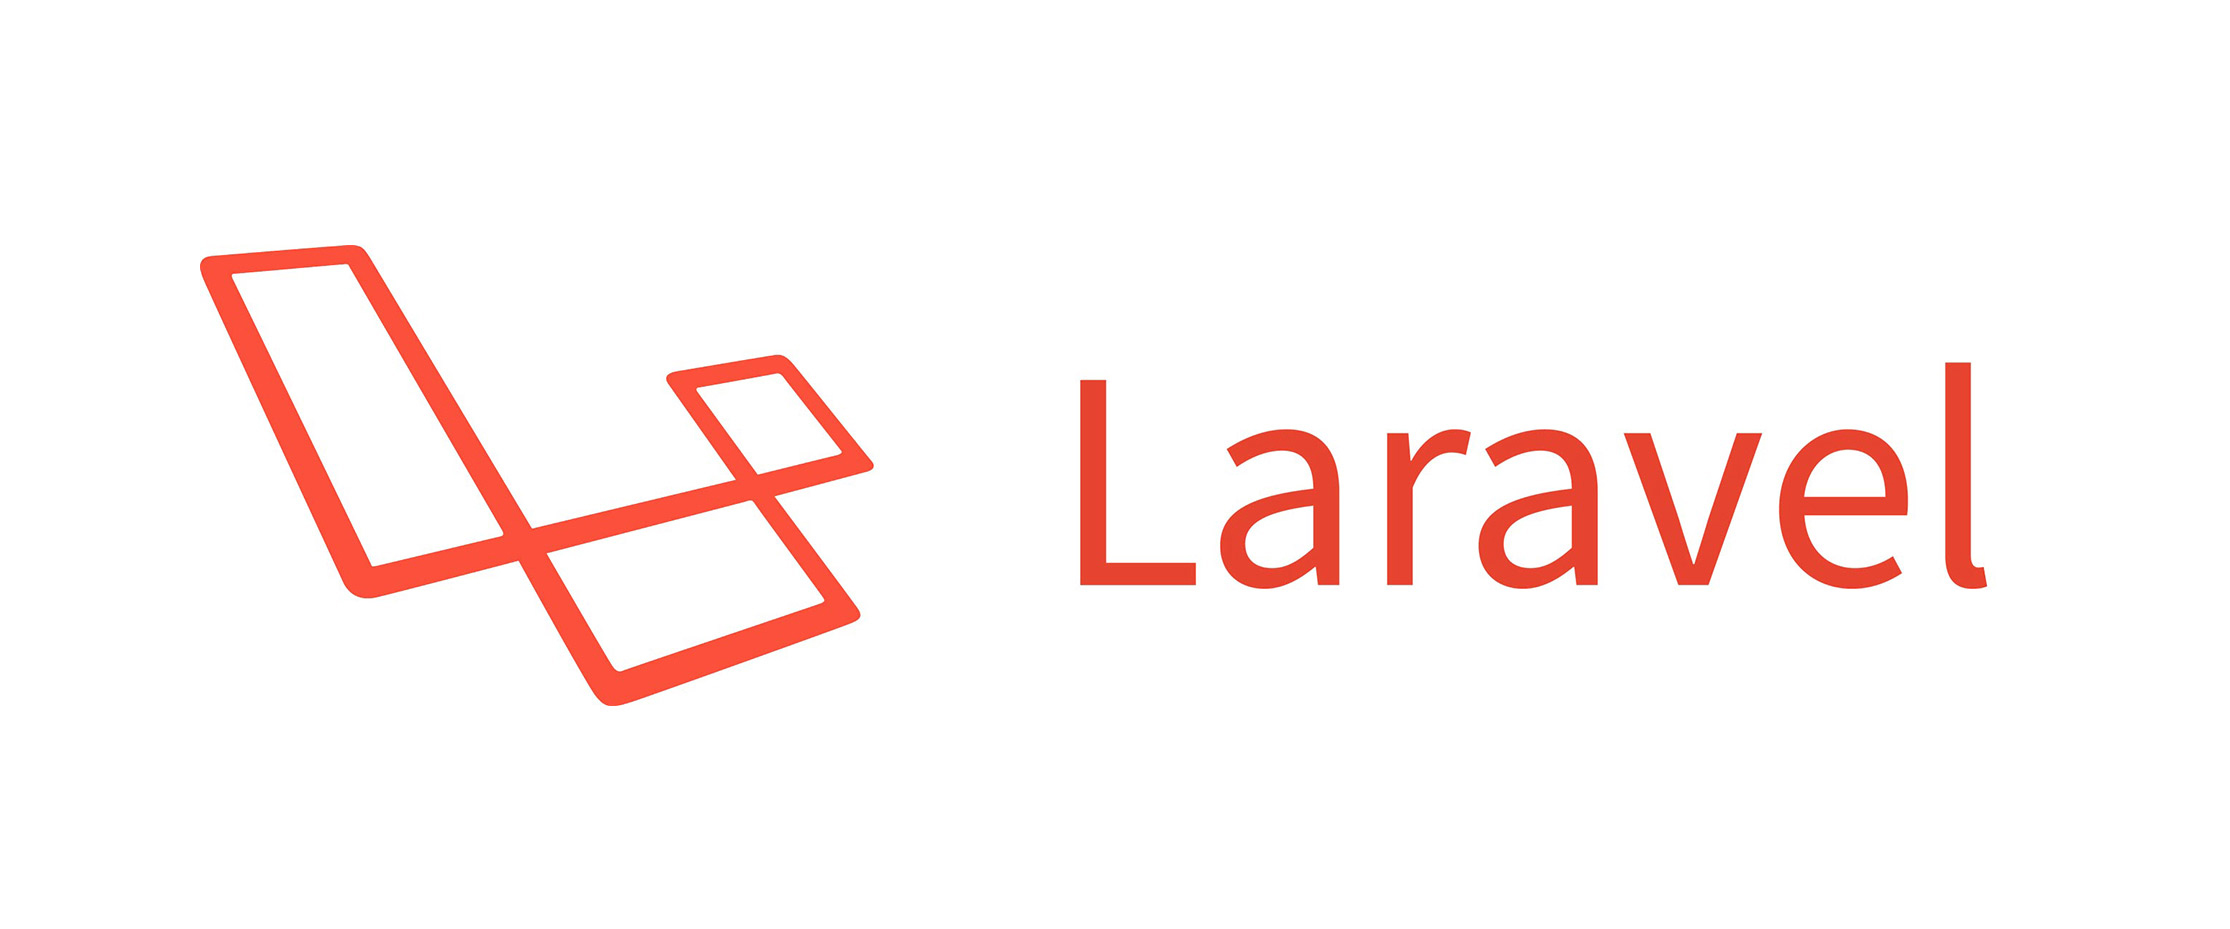 Laravel sitemap создаем xml карту сайта в несколько строк кода